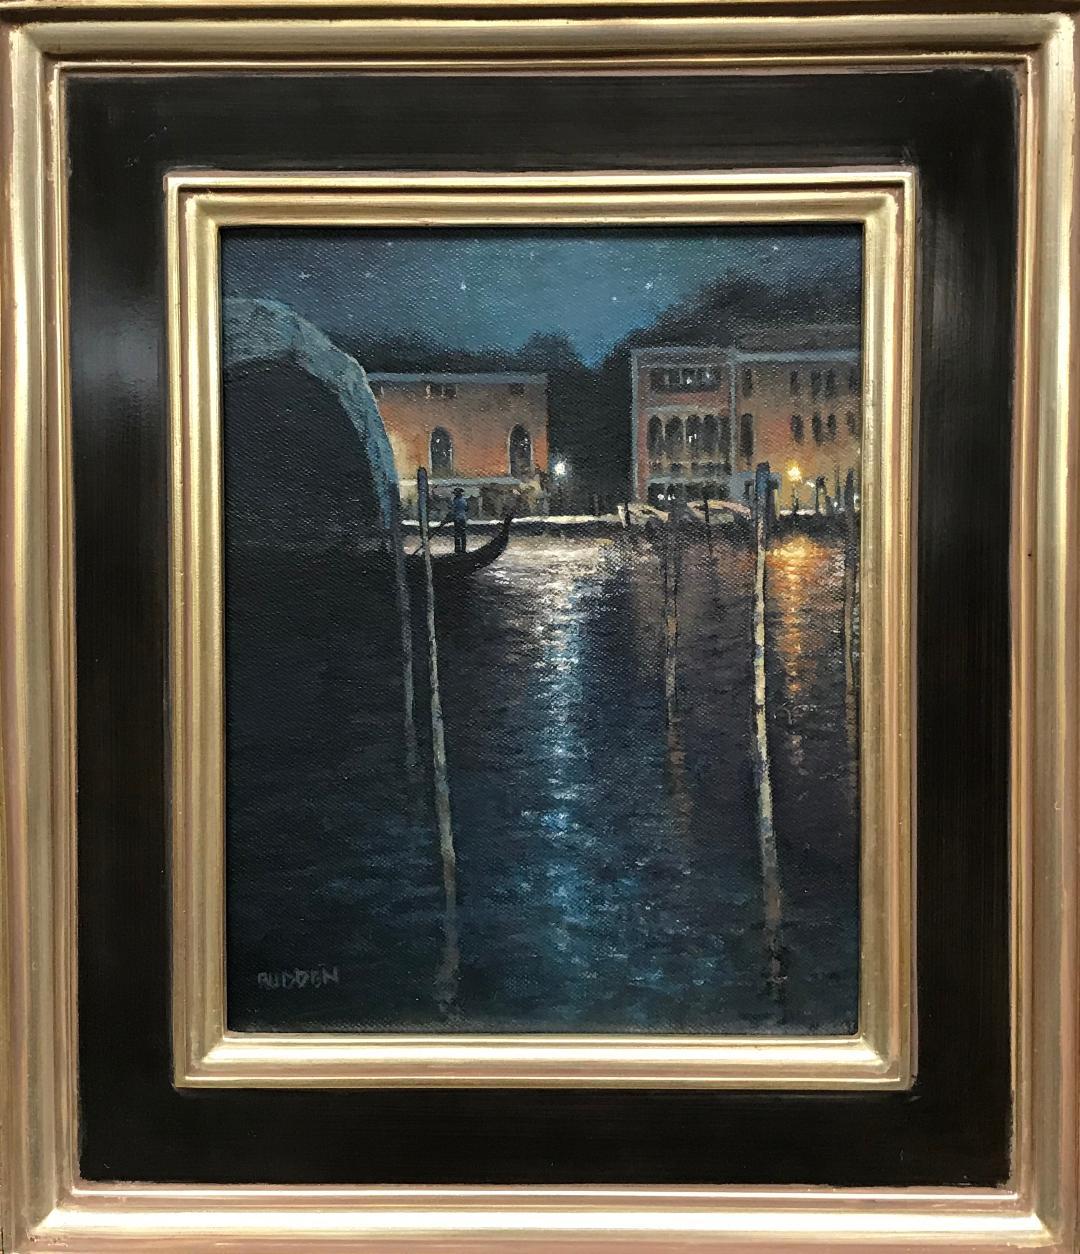 Abend auf dem Kanal, Venedig
Öl/Platte
10 x 8 ungerahmt
Evening On the Canal, Venice ist ein Ölgemälde des preisgekrönten zeitgenössischen Künstlers Michael Budden, das einen dramatischen Mondlicht- und Reflektionseffekt zeigt, während eine Gondel